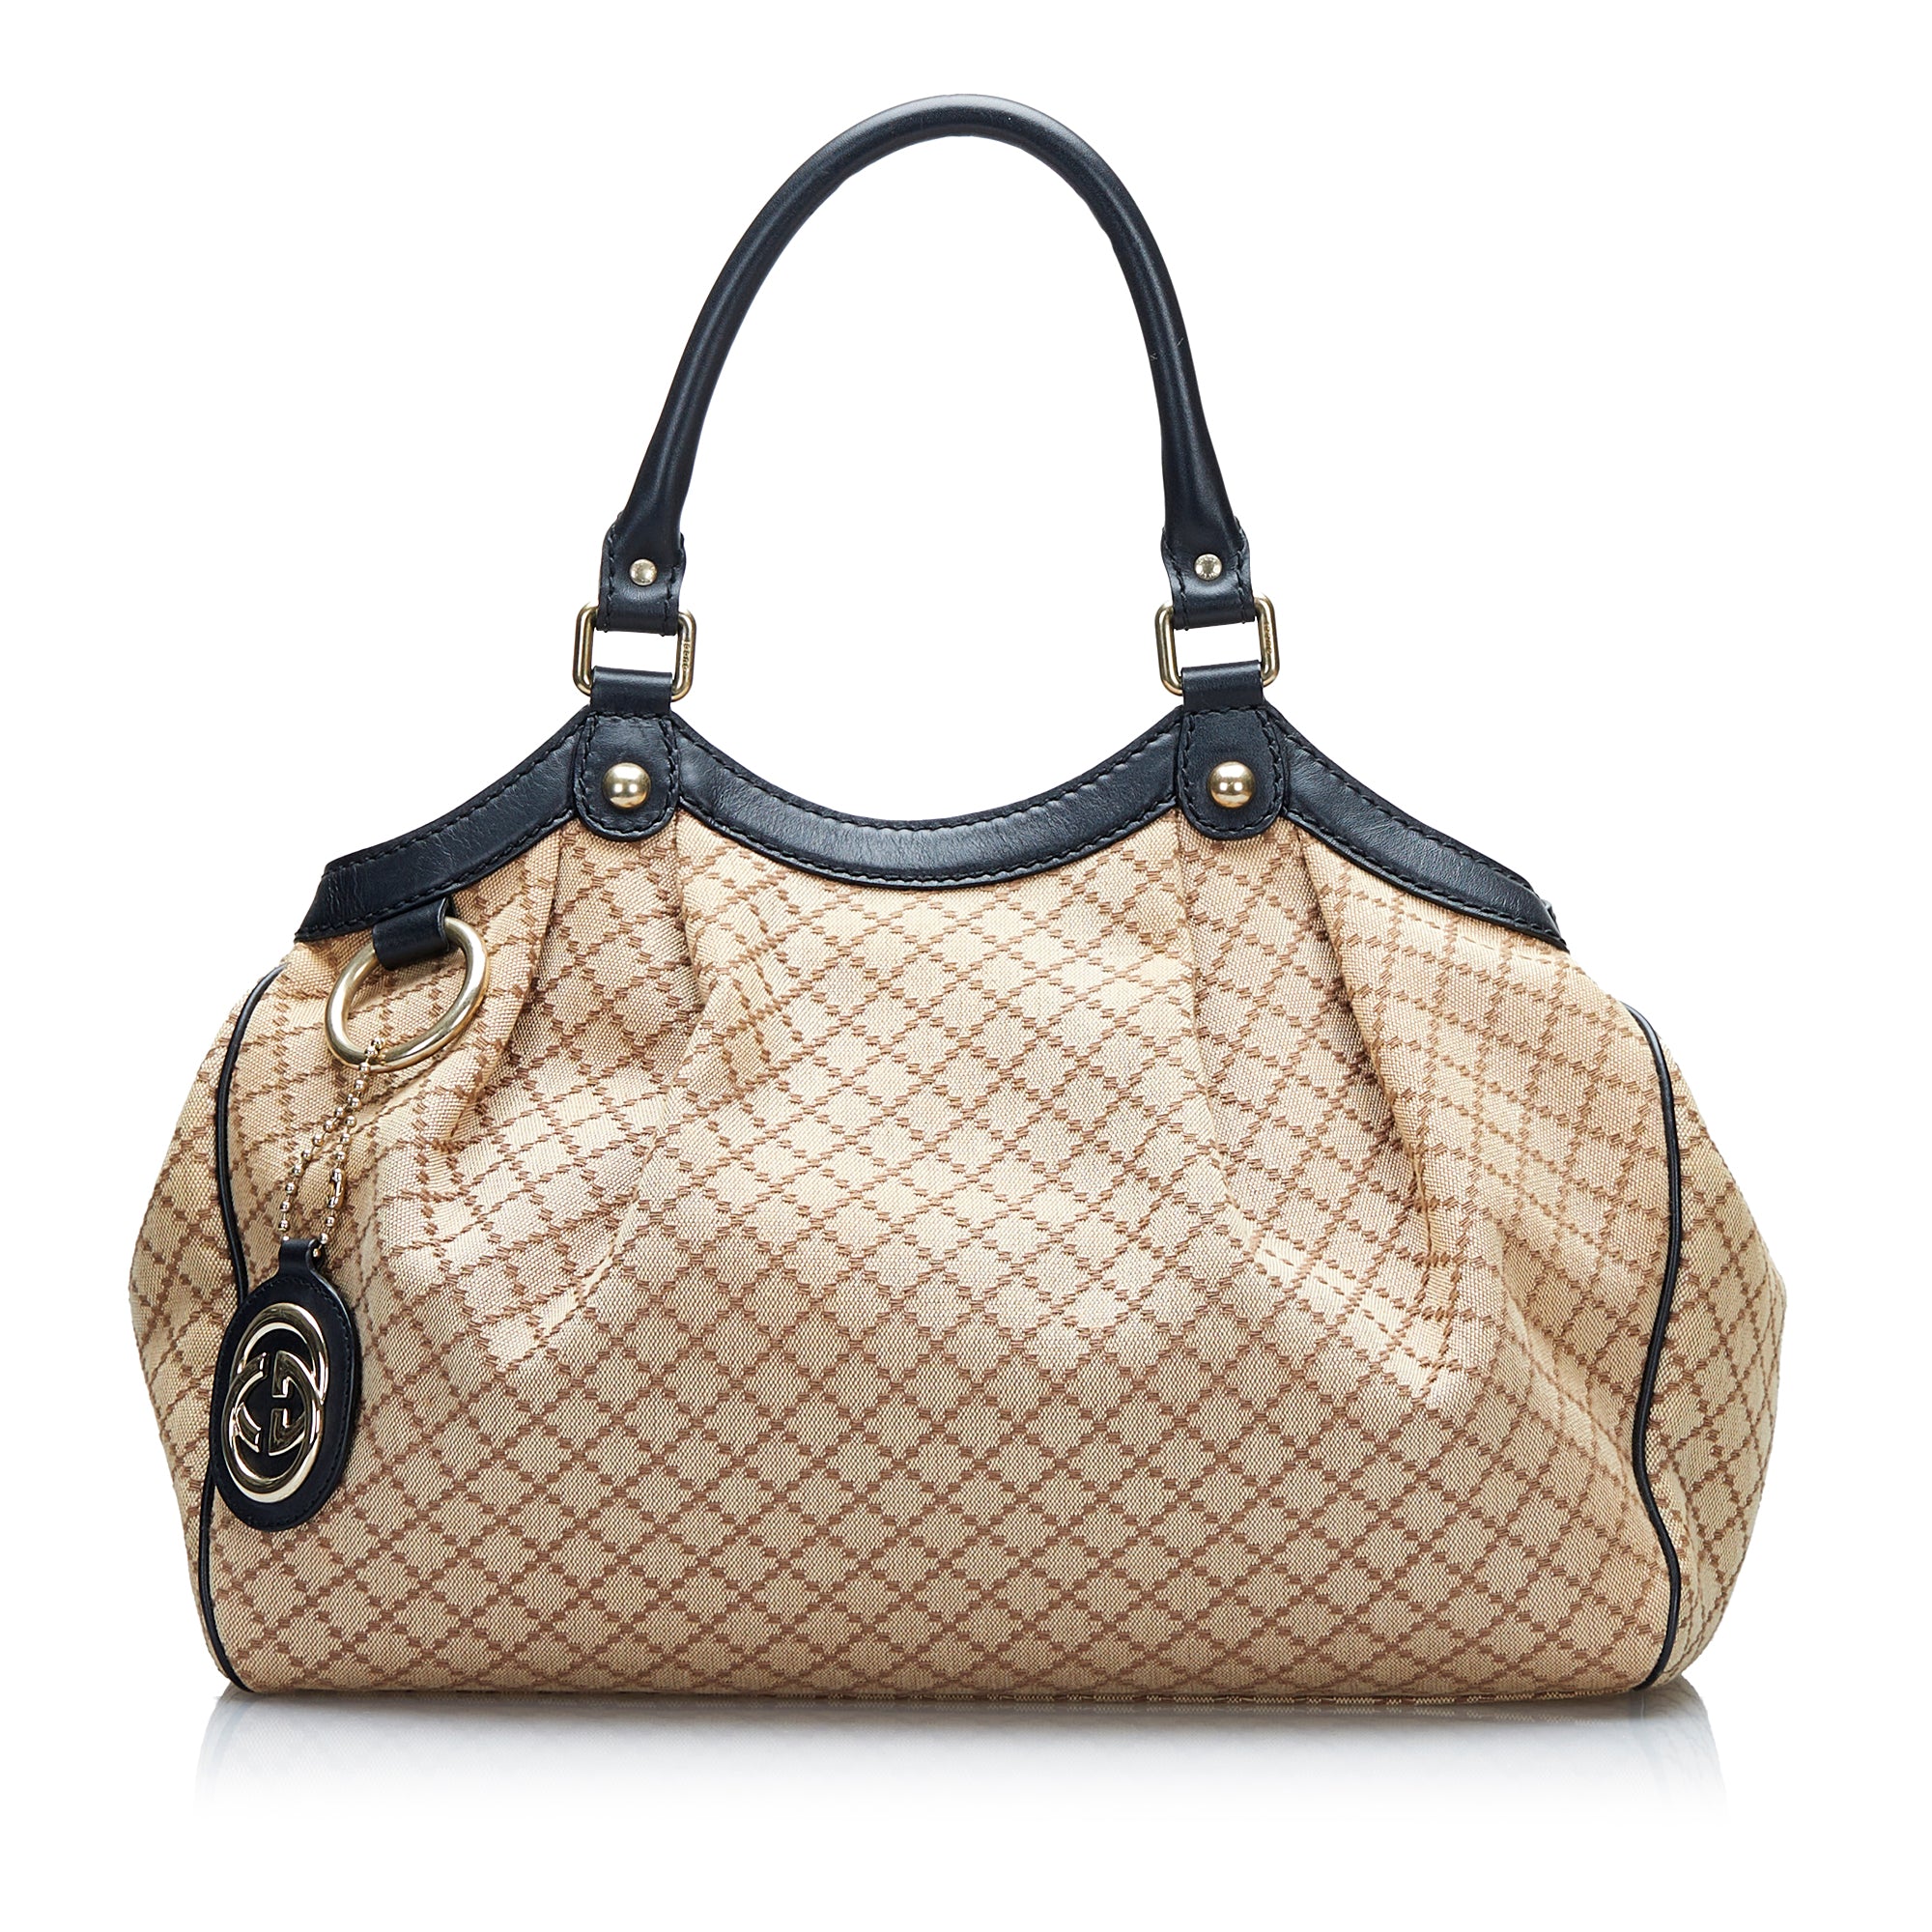 Gucci Sukey Medium GG Canvas Tote Bag Beige